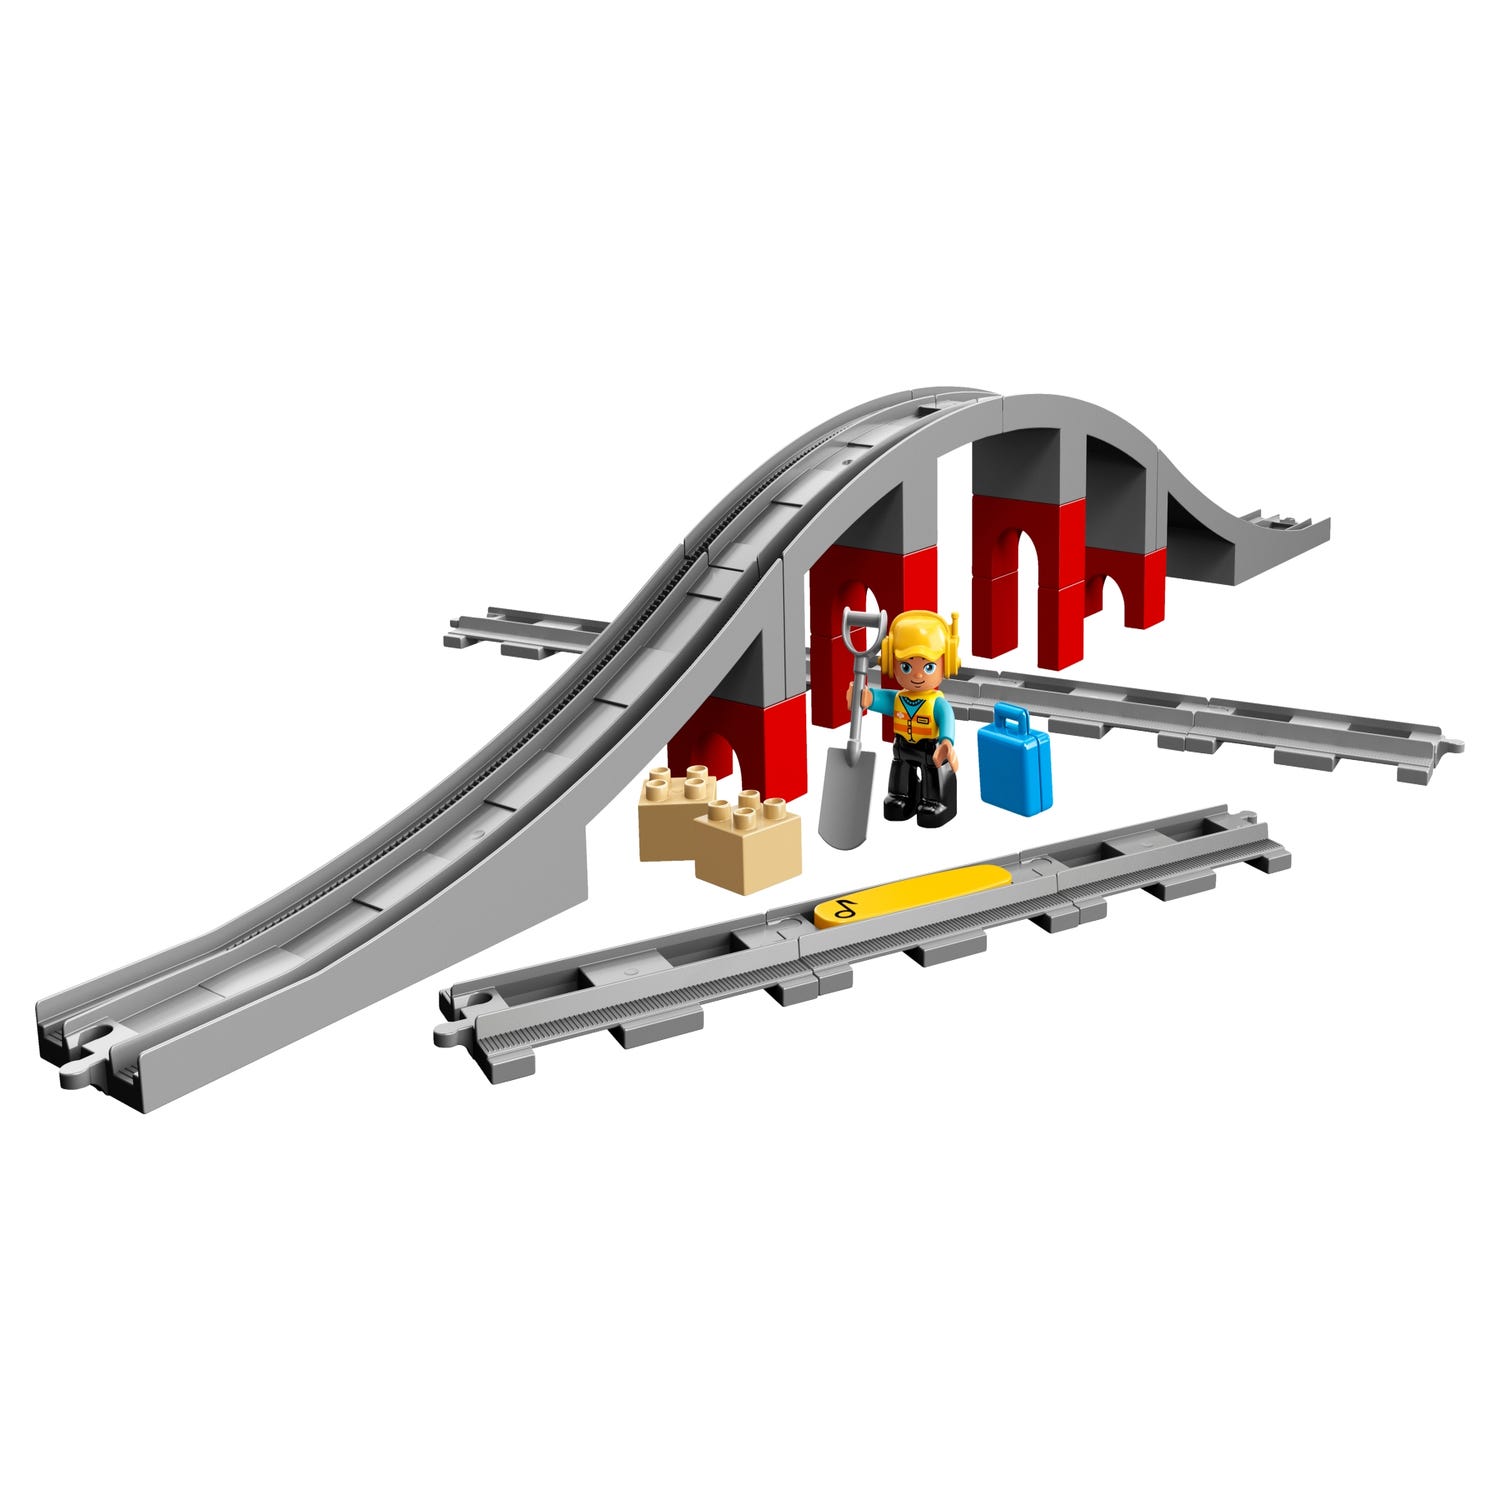 LEGO 10872 DUPLO Town Les Rails Et Le Pont Du Train, jouet pour